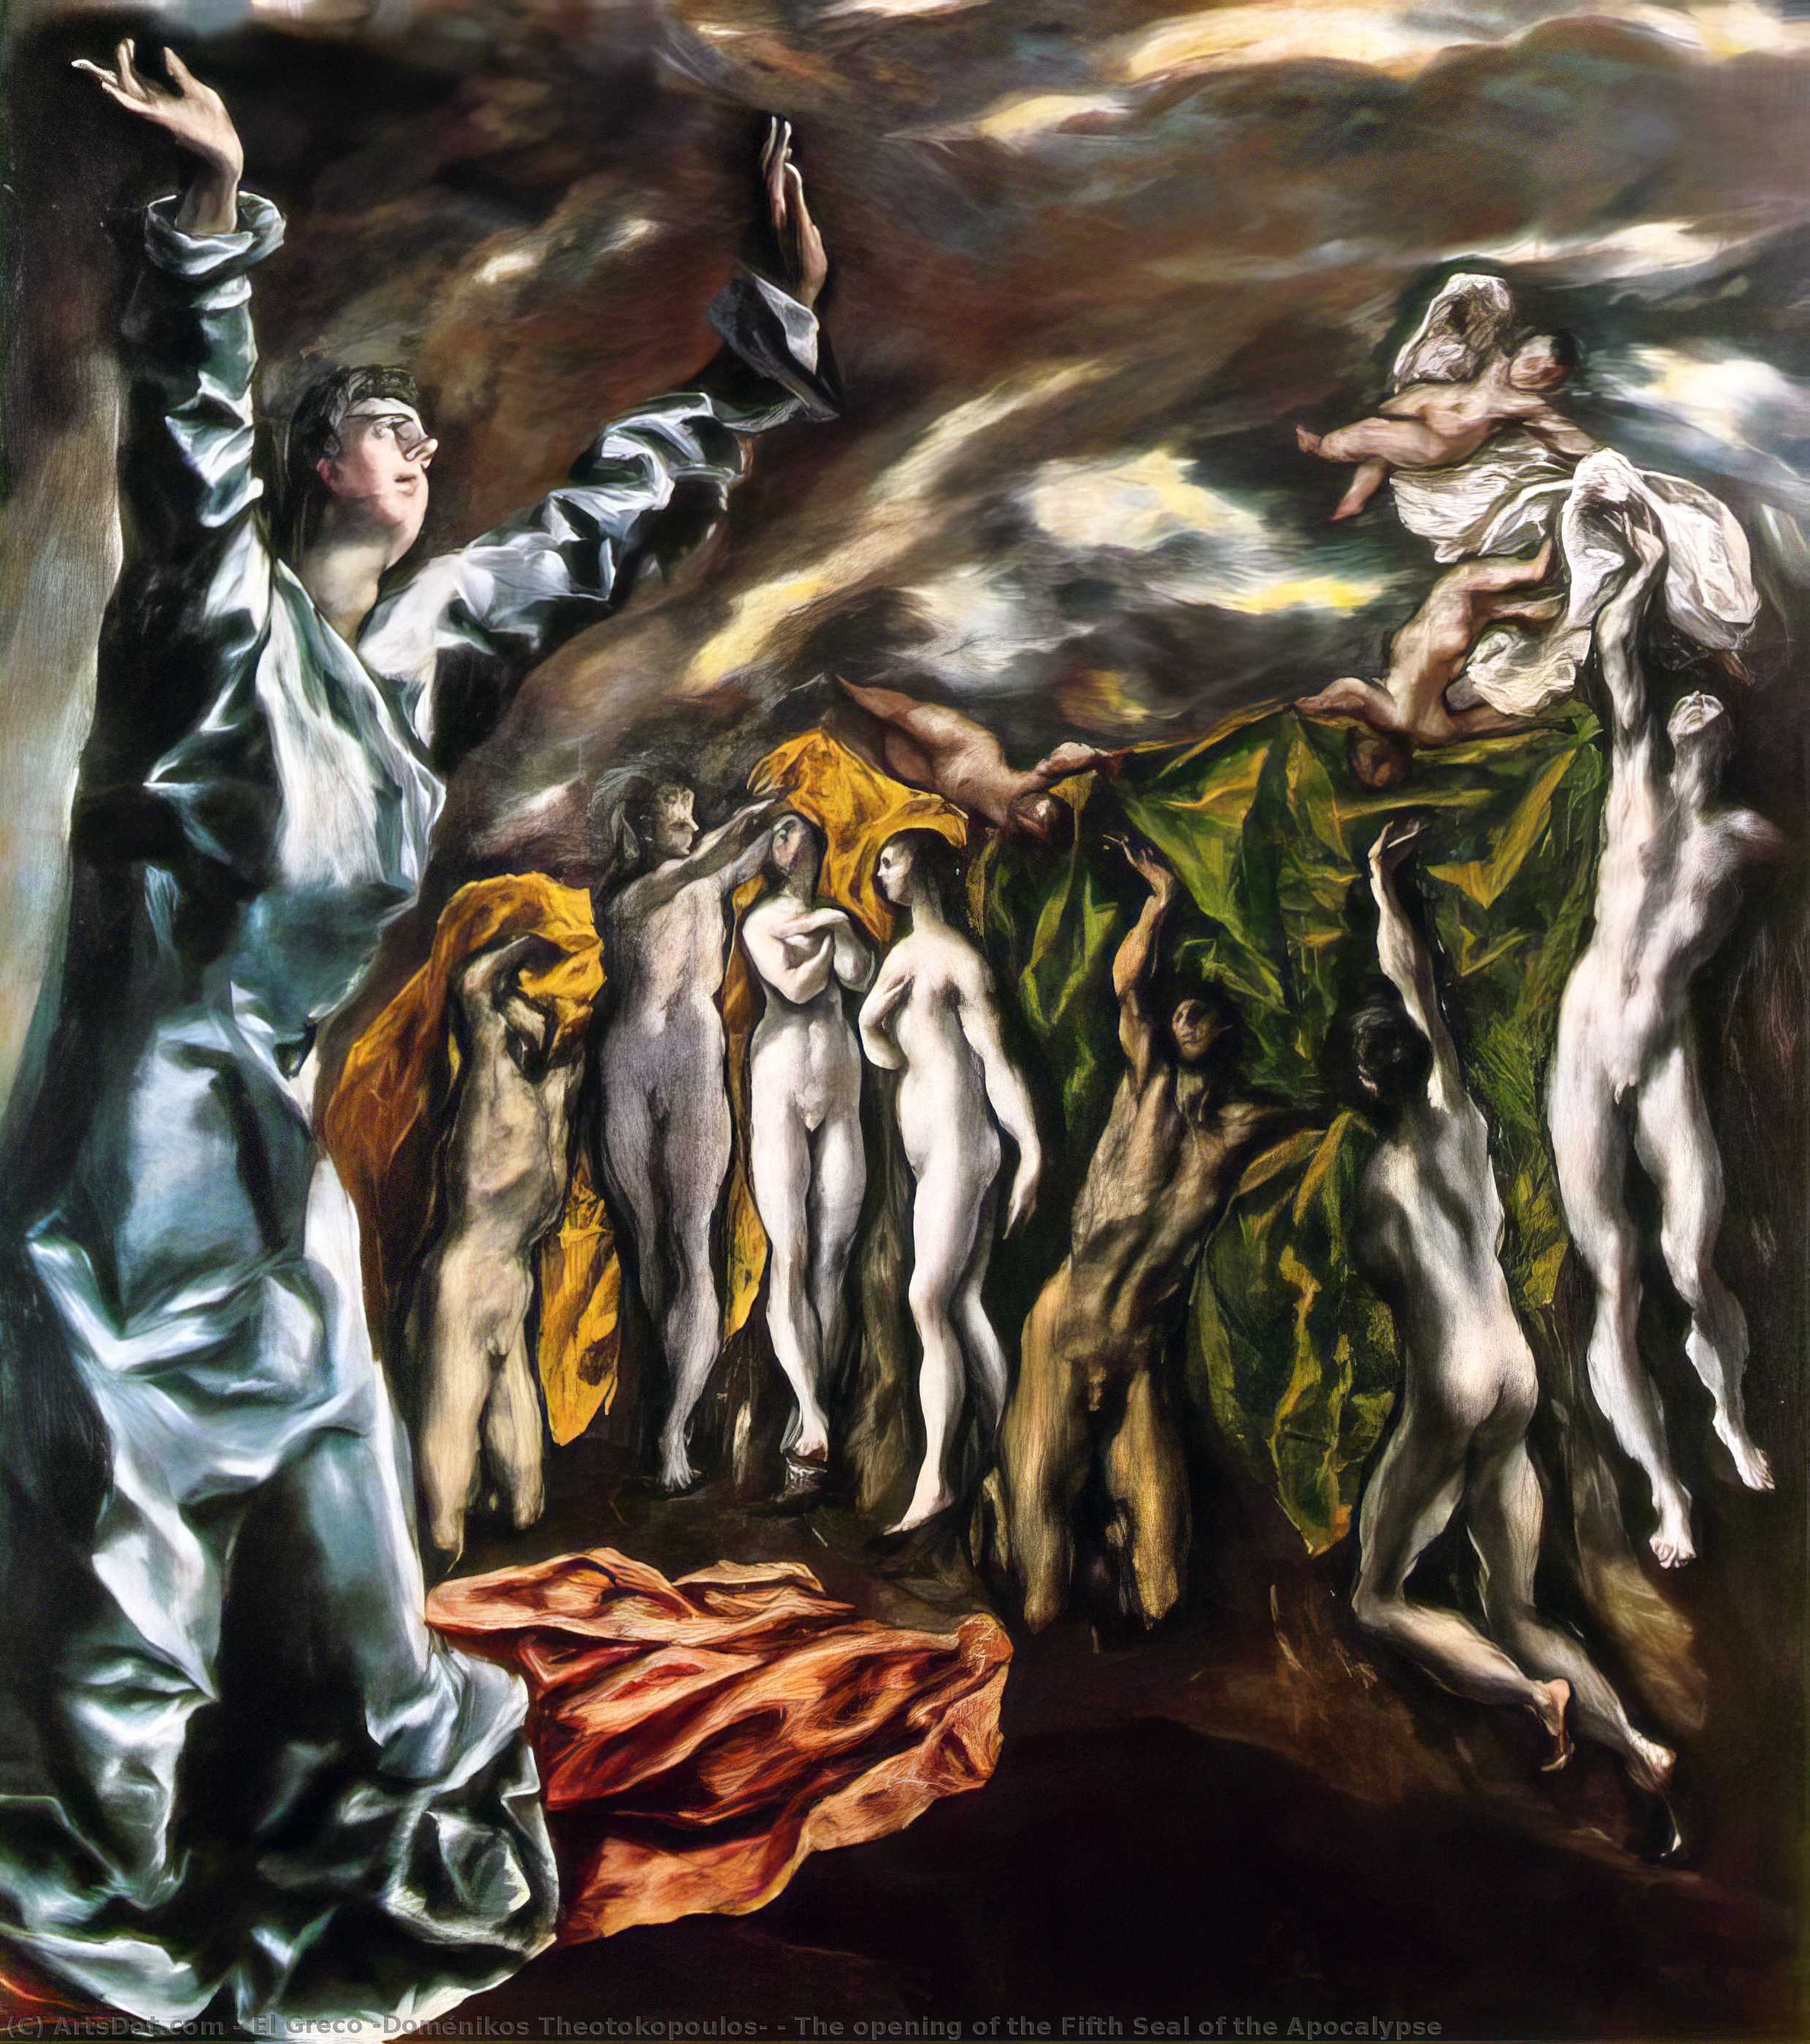 WikiOO.org - Enciclopédia das Belas Artes - Pintura, Arte por El Greco (Doménikos Theotokopoulos) - The opening of the Fifth Seal of the Apocalypse